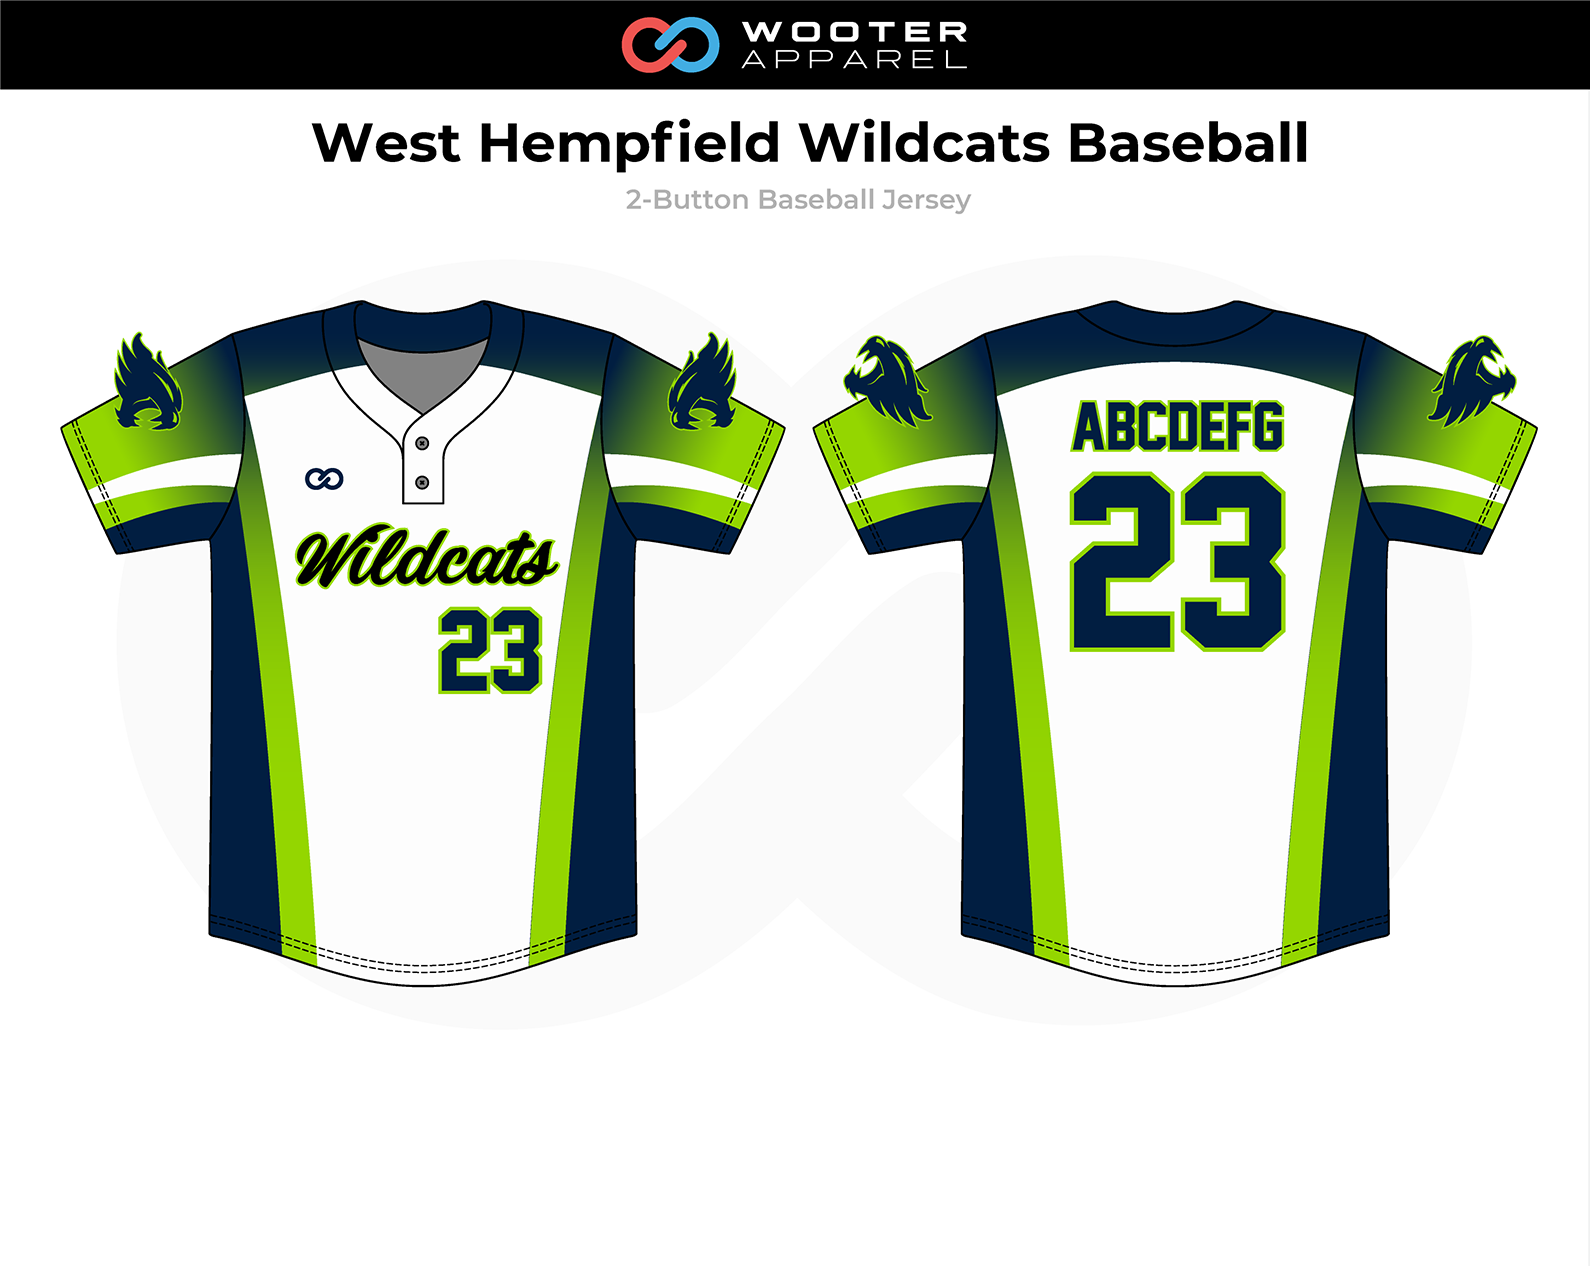 2018-11-06 West Hempfield Wildcats Baseball 2-Button Jersey.png